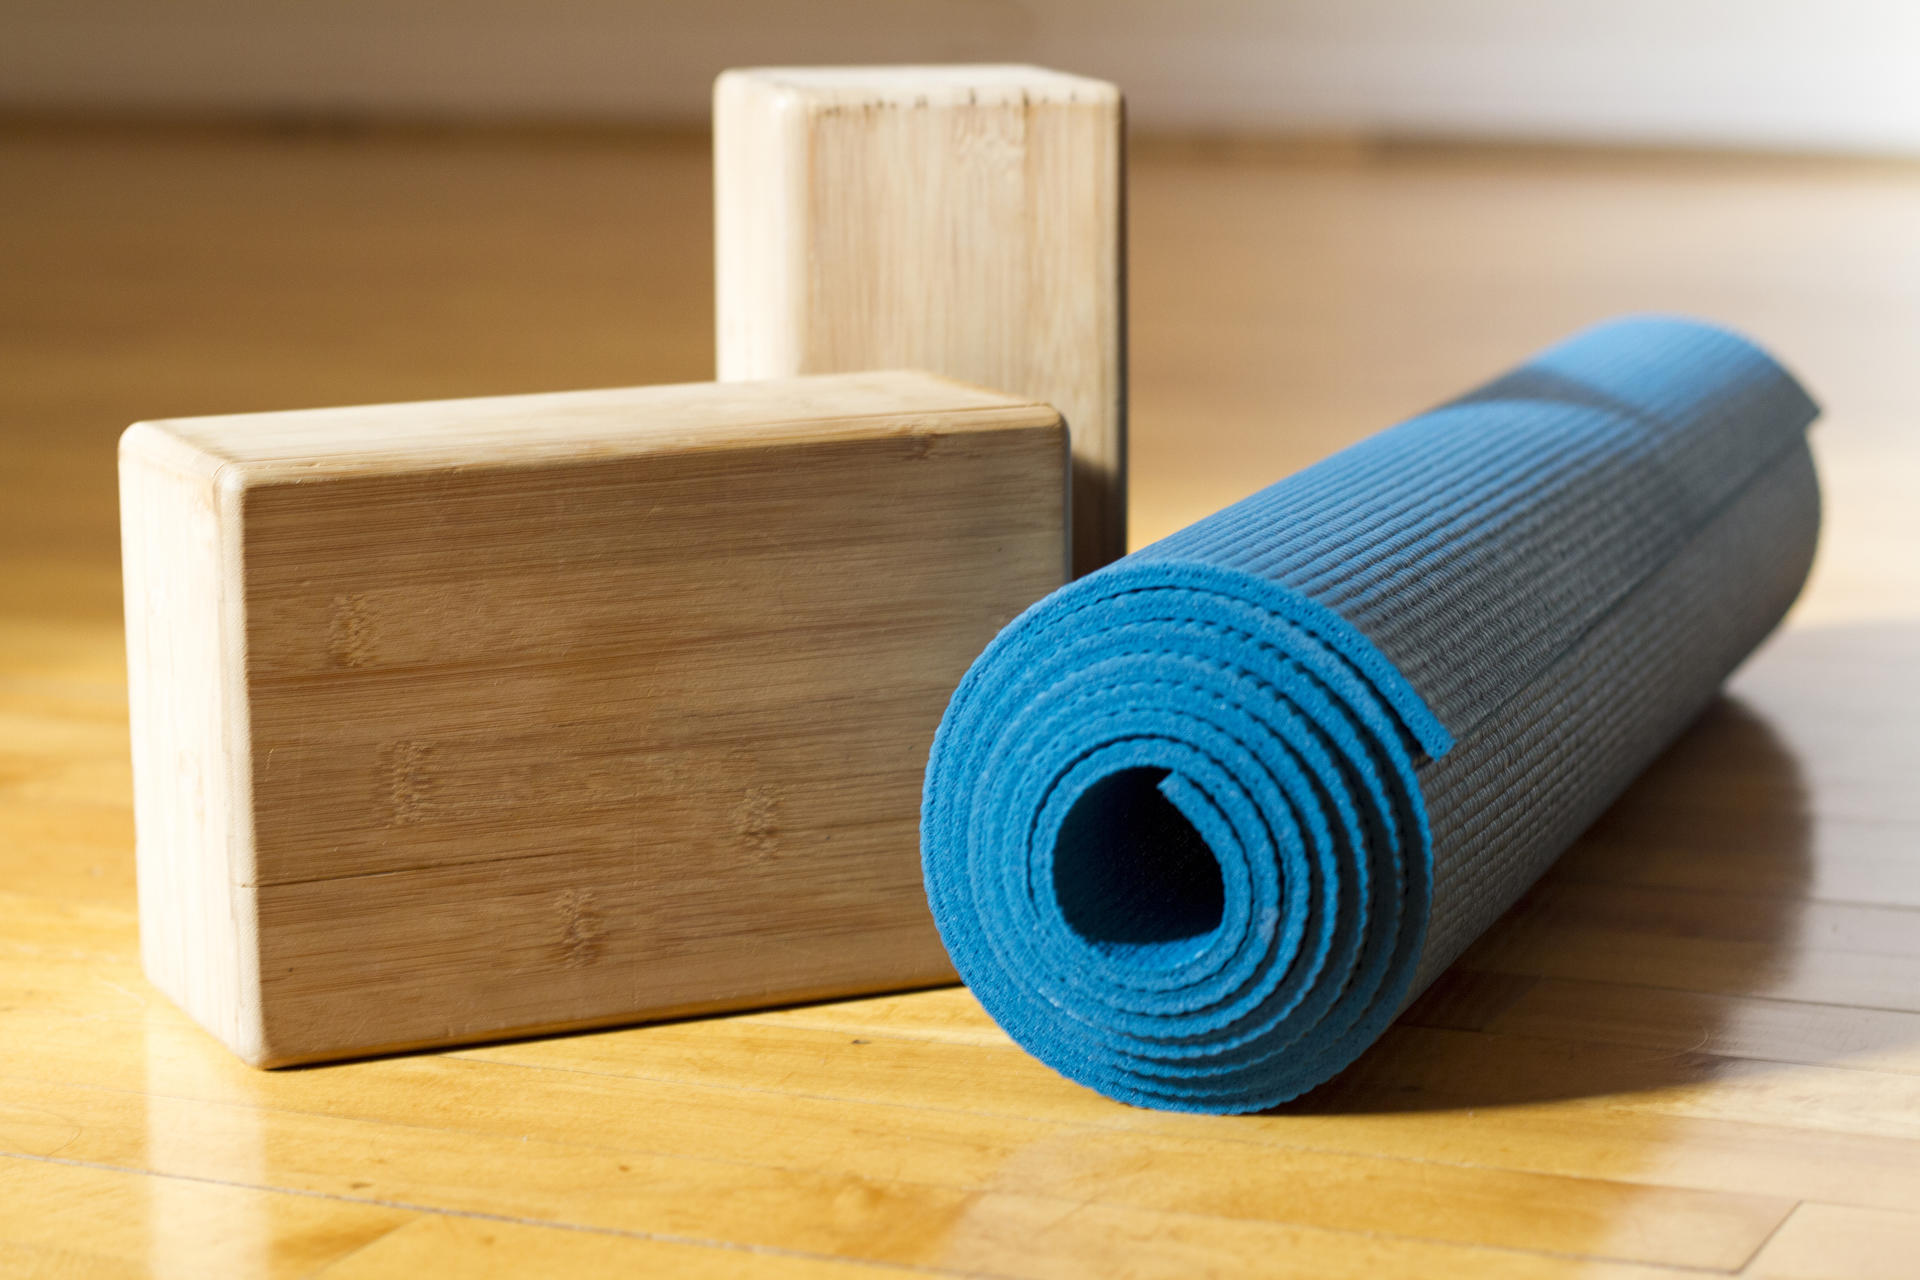 Cork Wood Exercise YOGA BLOCK Brick For Fitness Stretching Aid Gym Pilates UK 